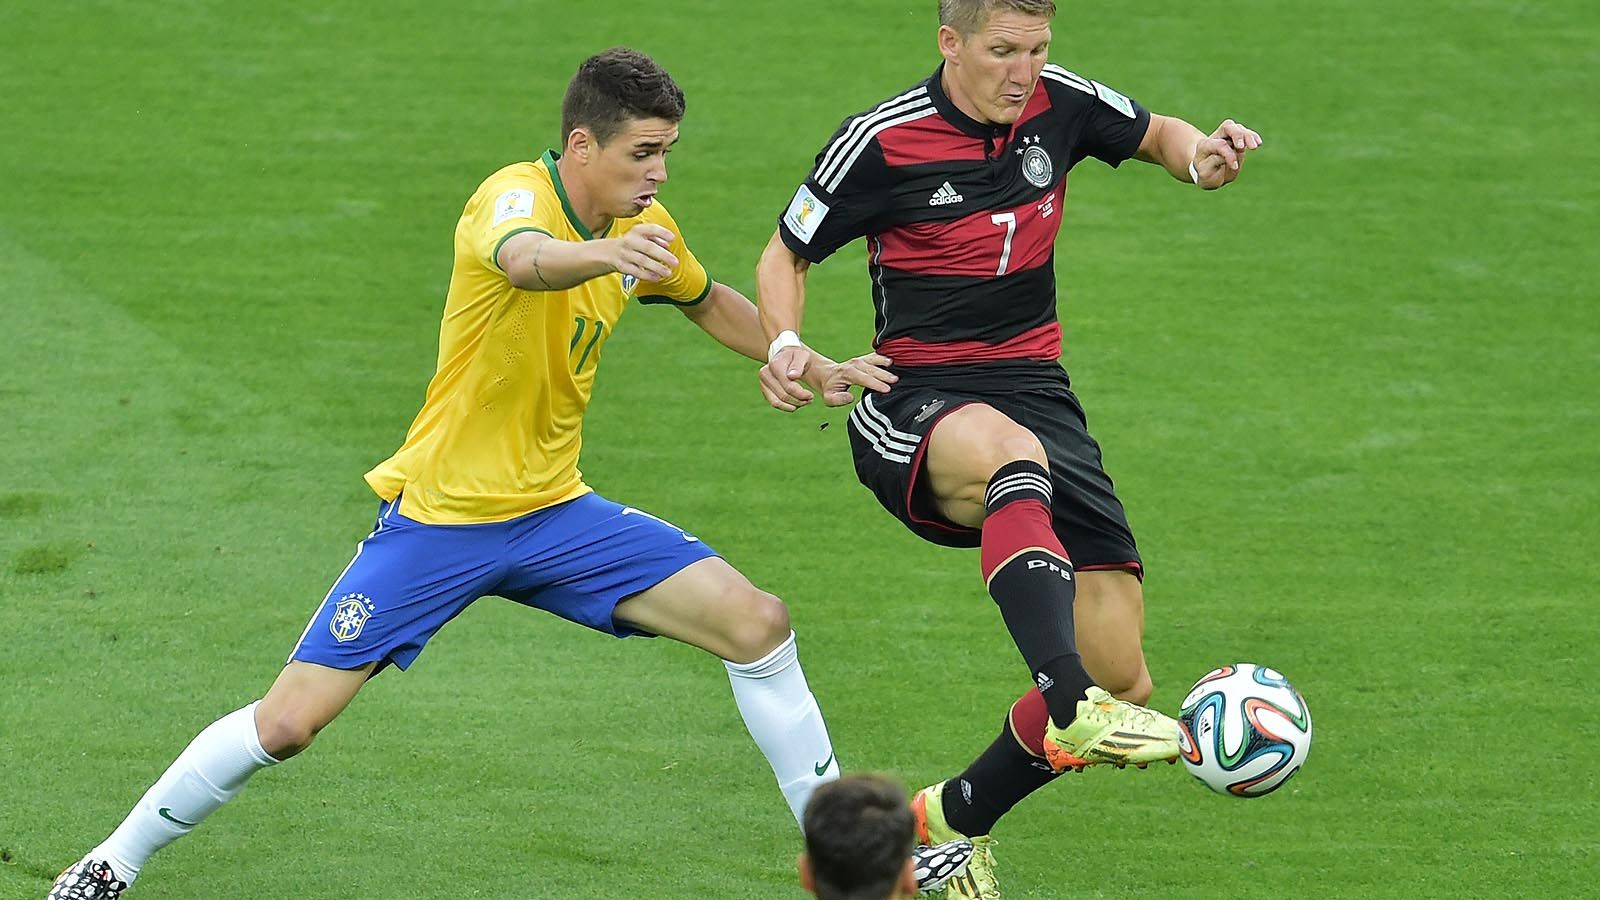 Германия 1 июля. Бразилия Германия 1-7. ЧМ 2014 Германия Бразилия 7:1. ЧМ 2014. Полуфинал. Бразилия - Германия. Бразилия Германия 2014.